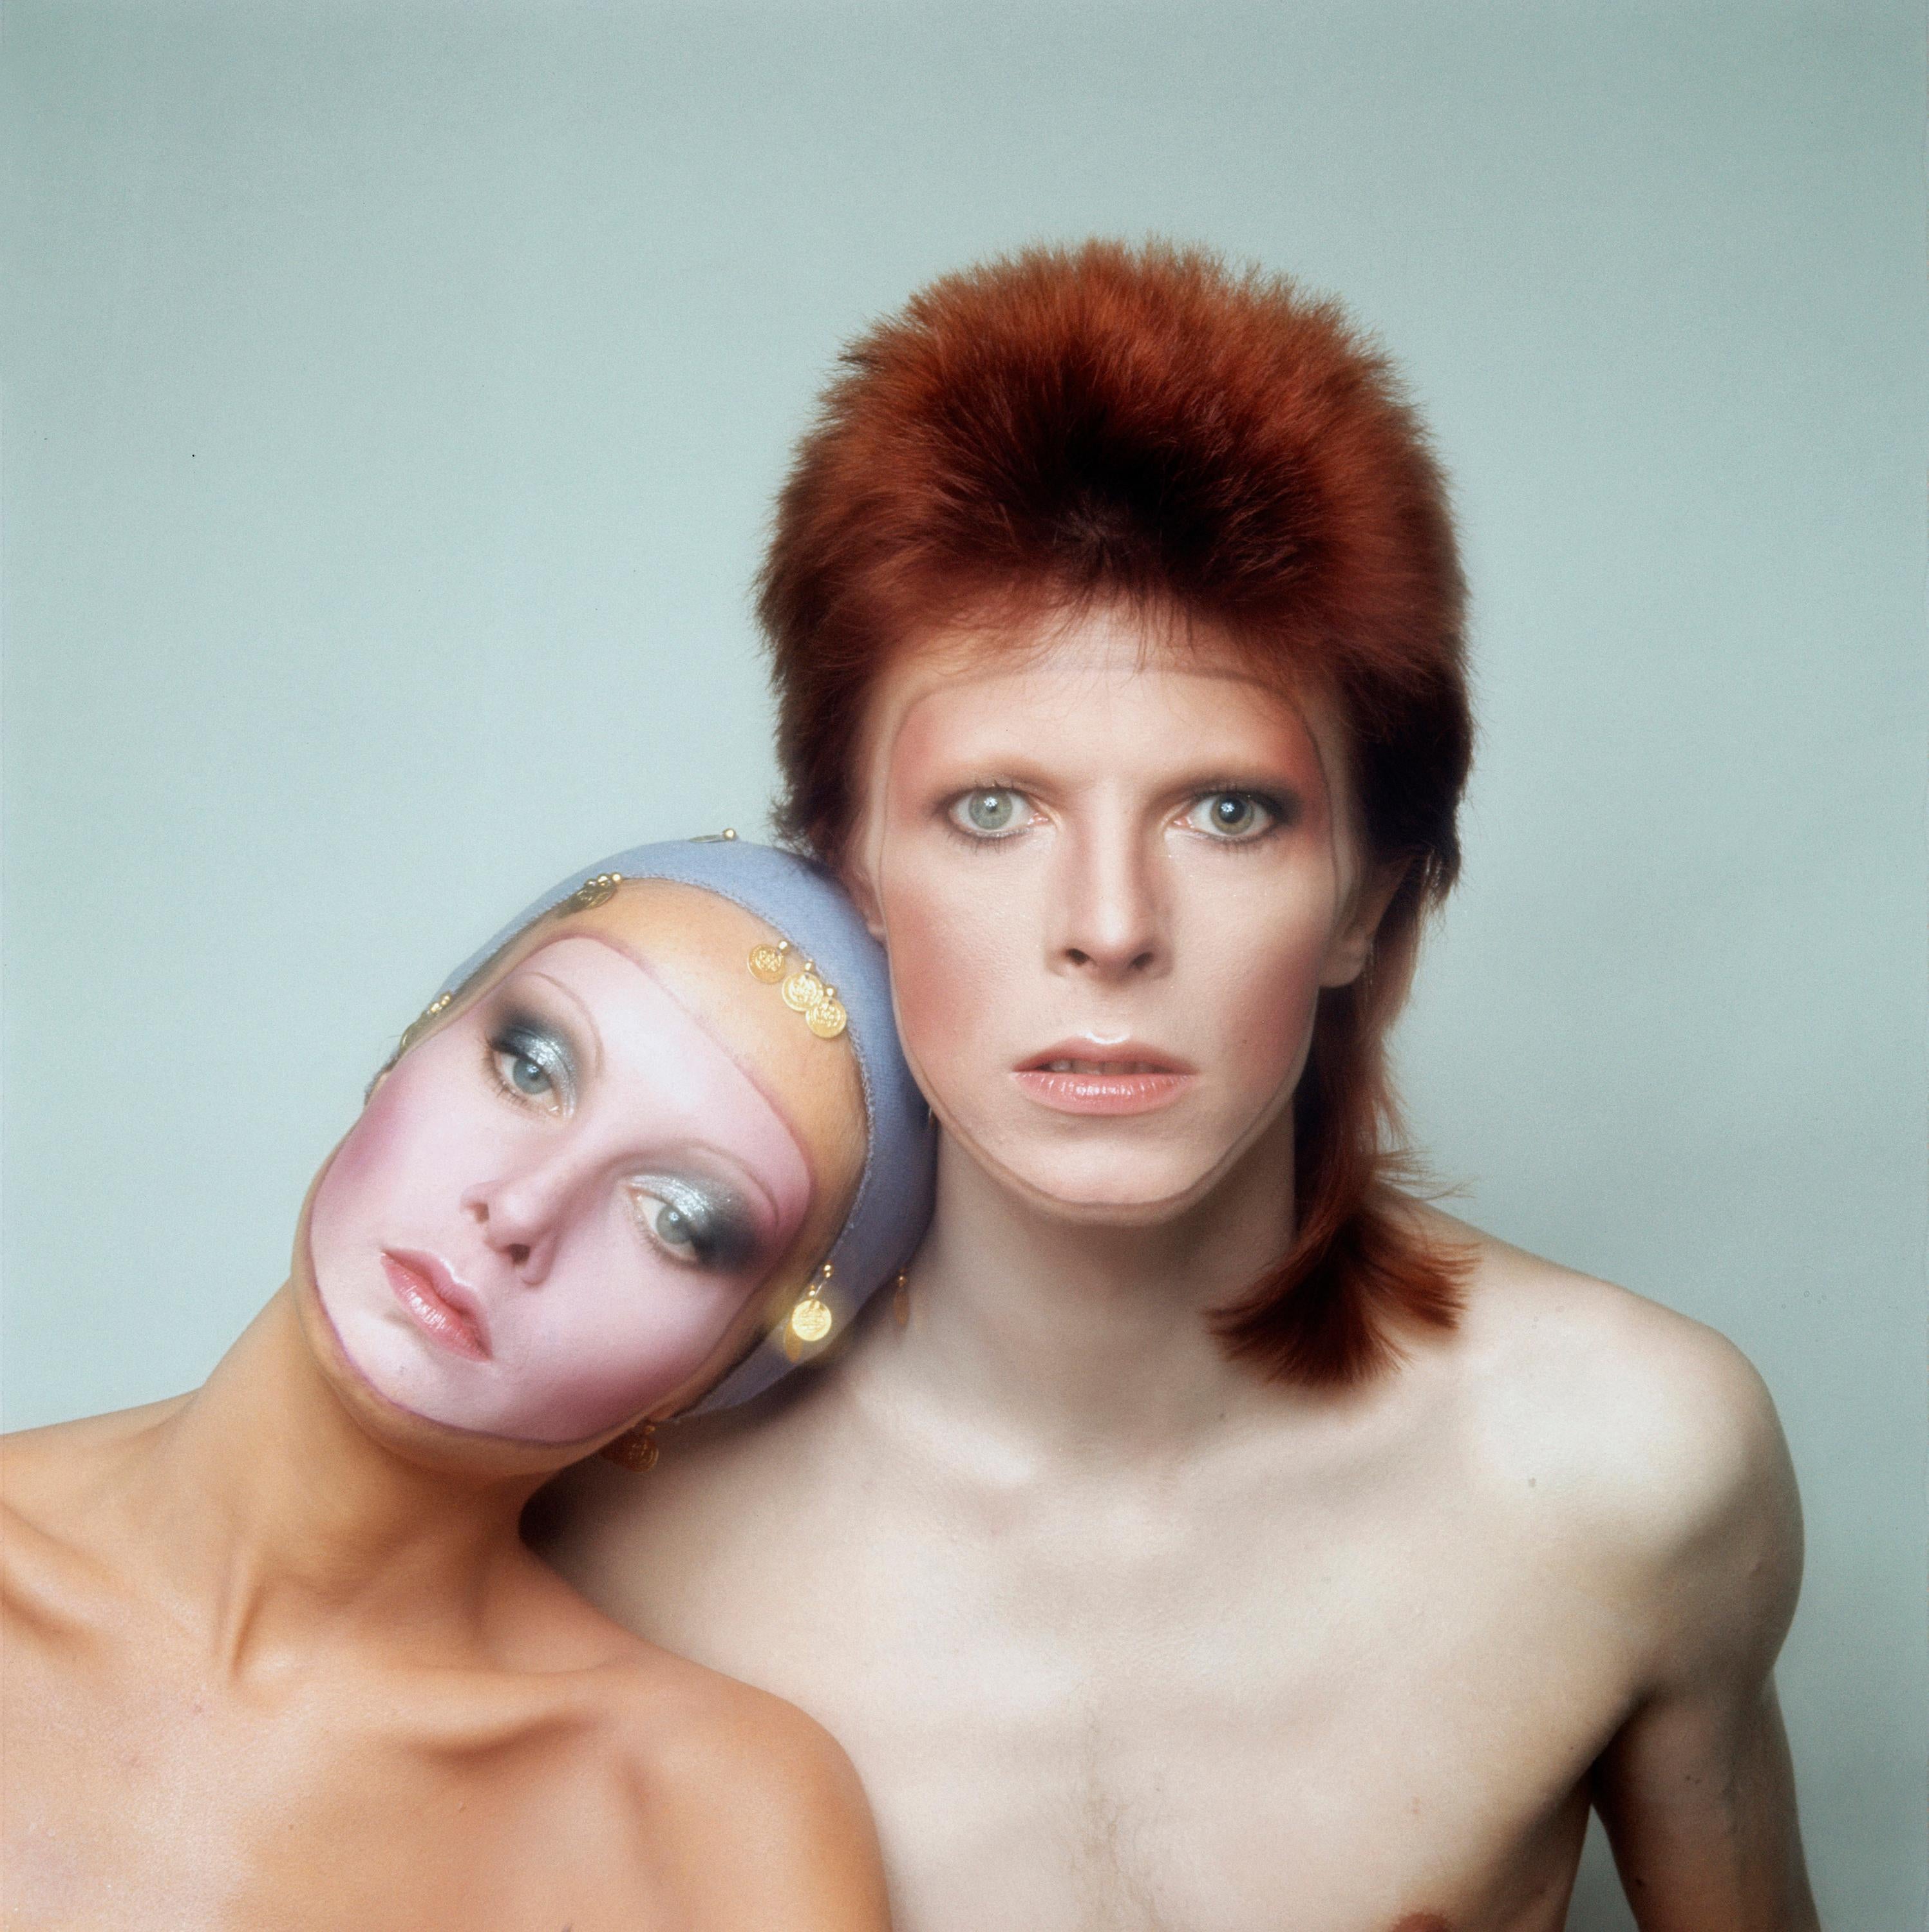 David Bowie & Twiggy Pin-Ups album cover, 1973 by Justin de Villeneuve